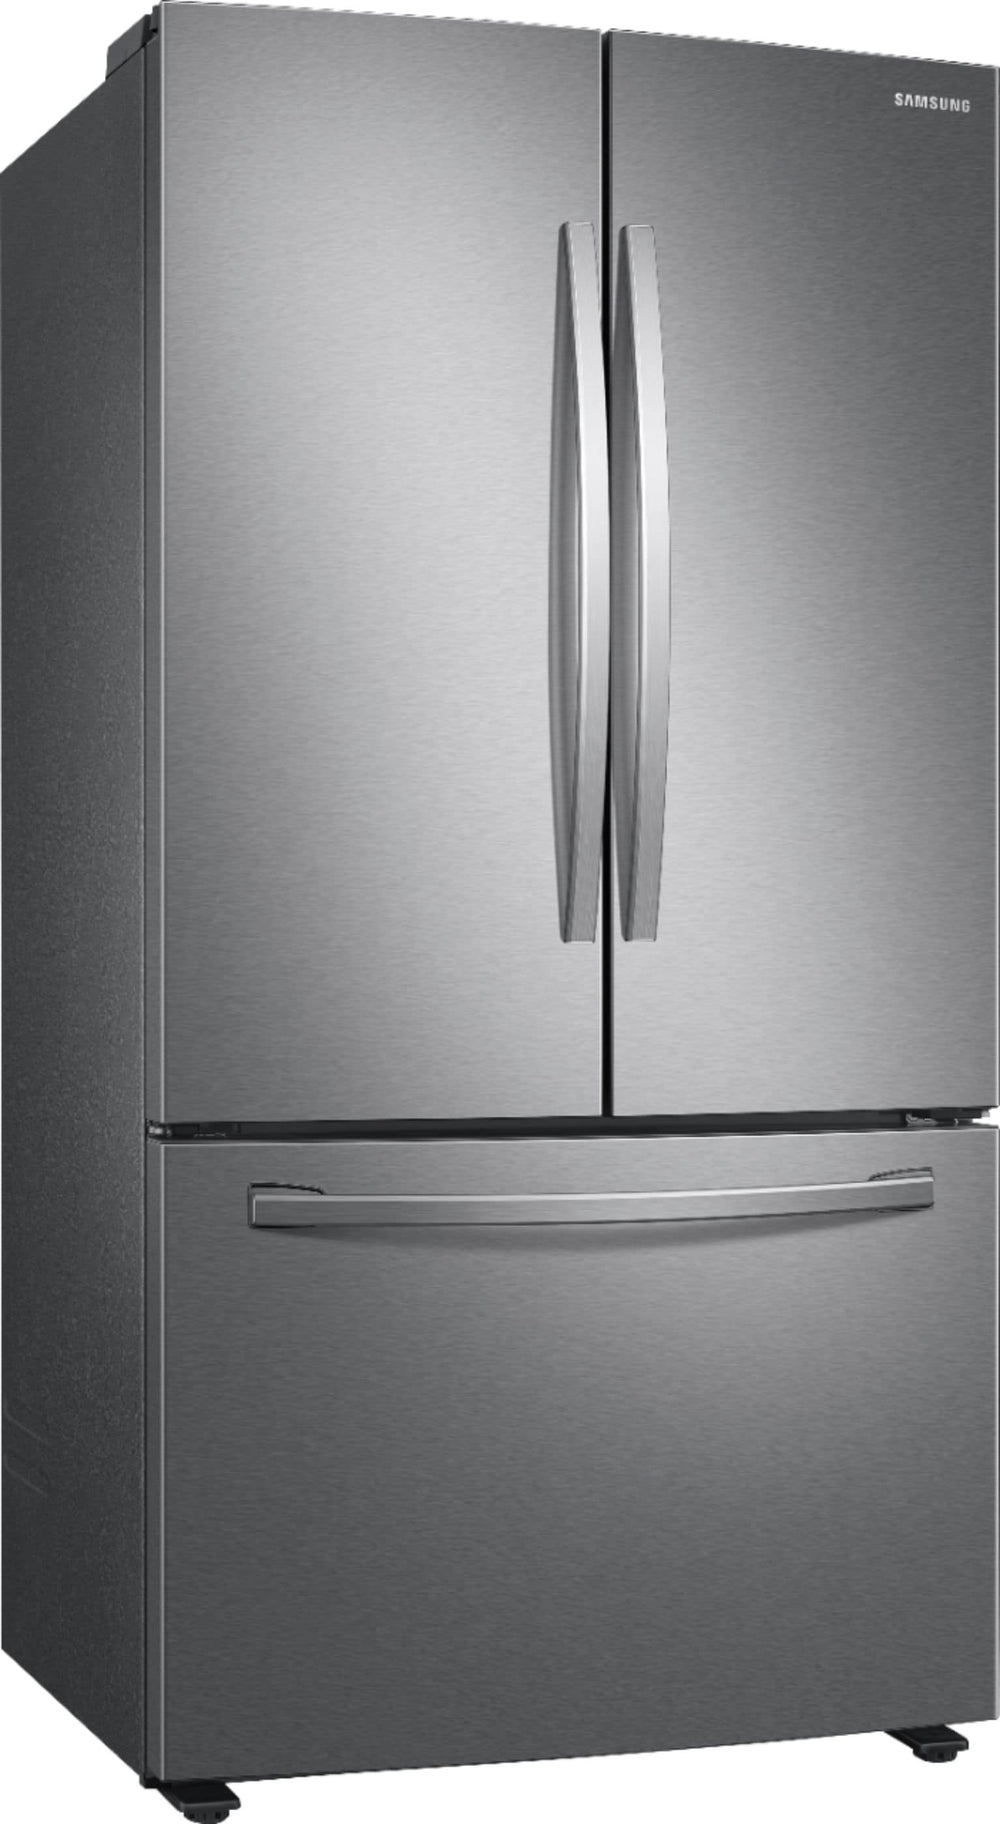 Samsung - 28 cu. ft. Large Capacity 3-Door French Door Refrigerator - Stainless steel_1